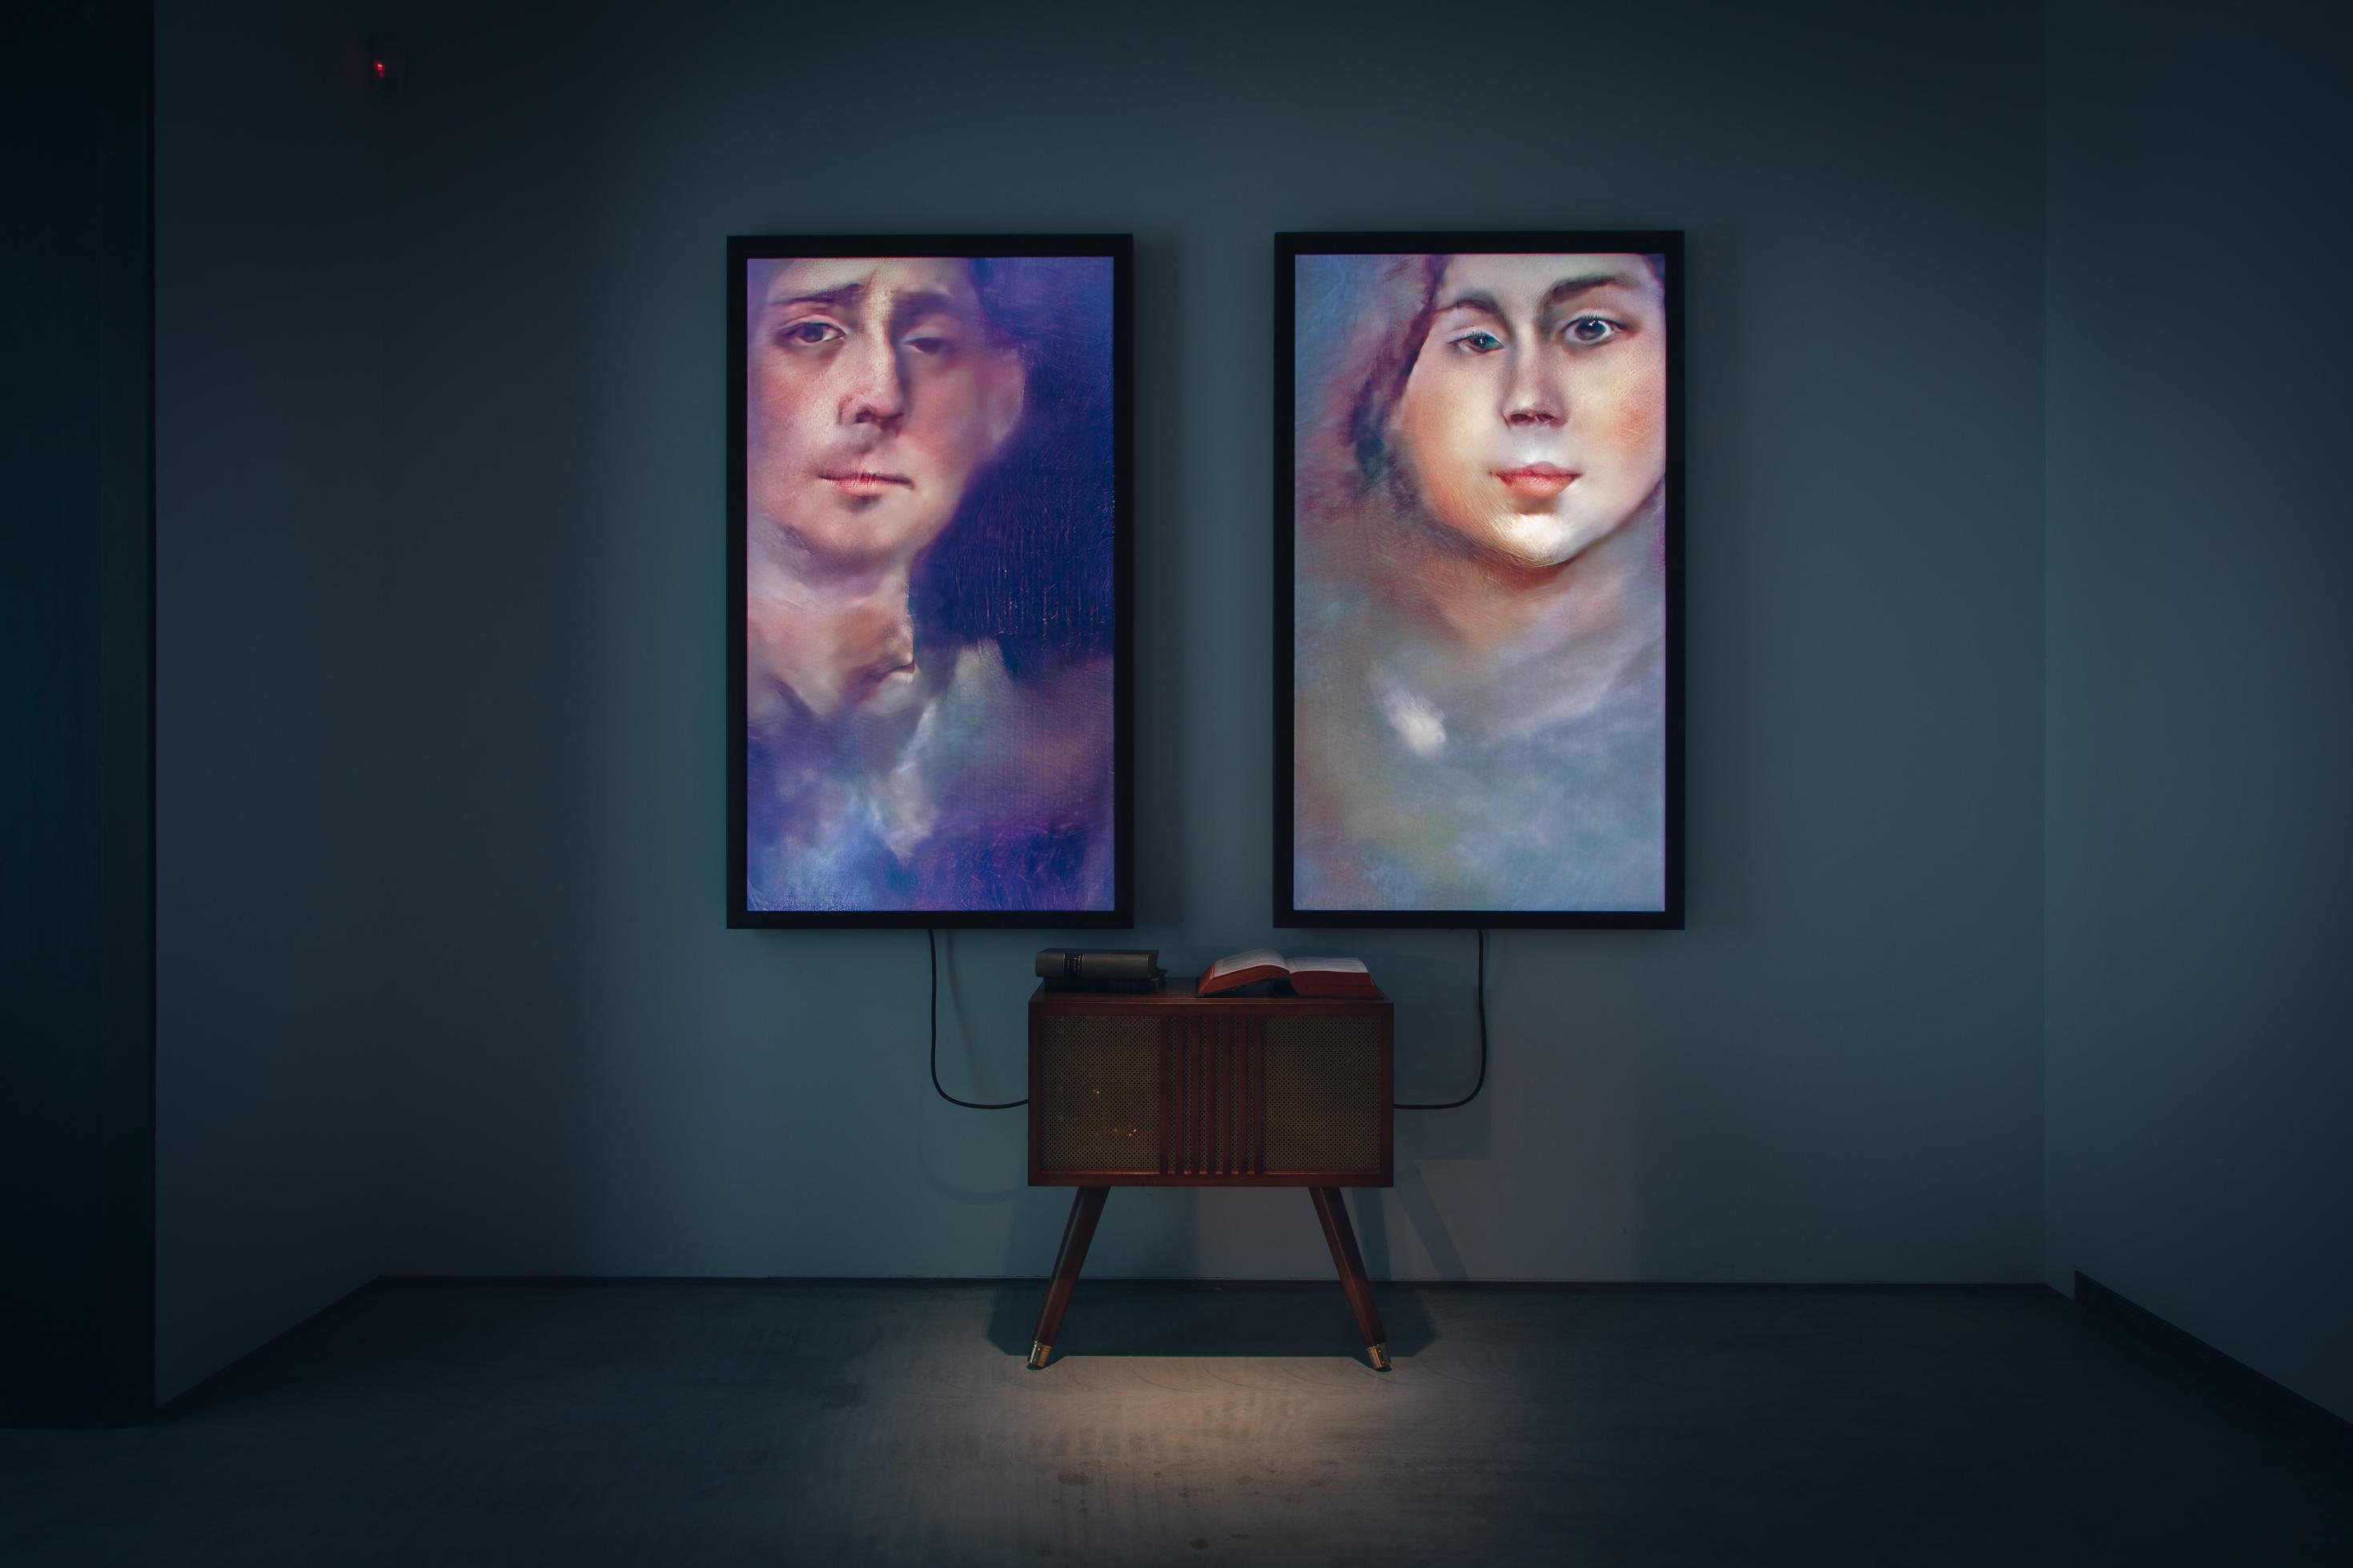 Eine künstliche Intelligenz erzeugt kontinuierlich Porträts von Menschen auf zwei Bildschirmen. Installation des deutschen Digitalkünstlers Mario Klingemann mit dem Titel „Memories of Passersby I“.